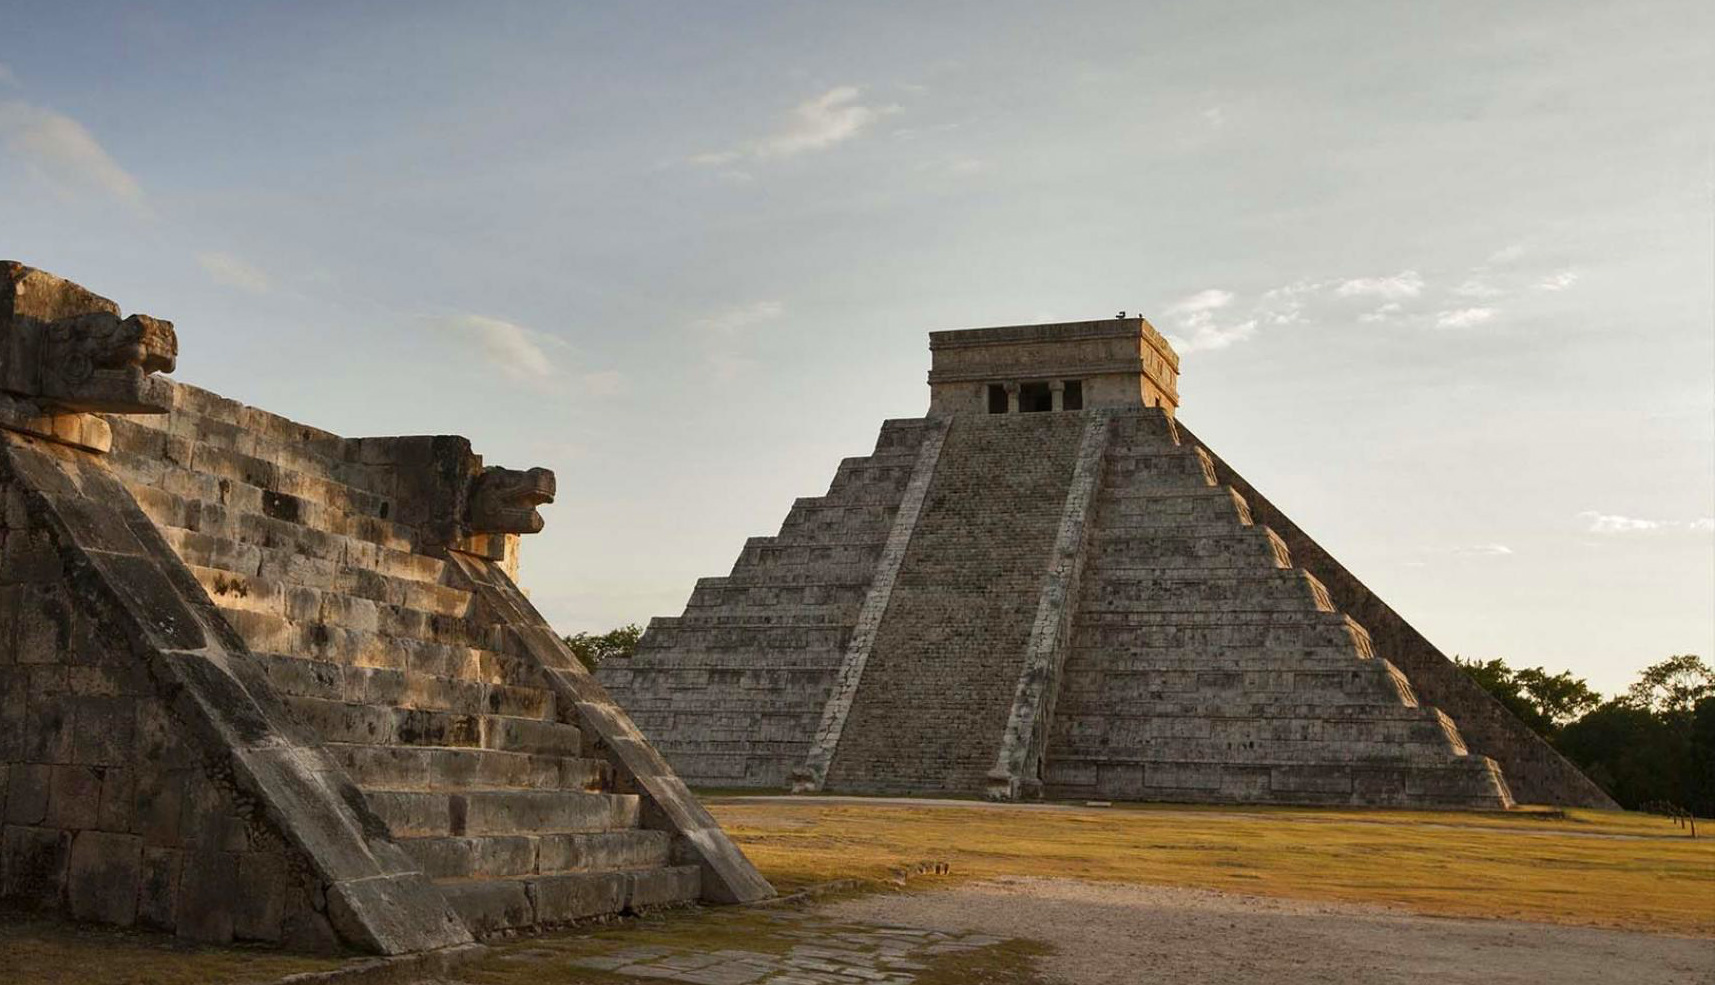 El Castillo, Chichén Itzá, Yucatan